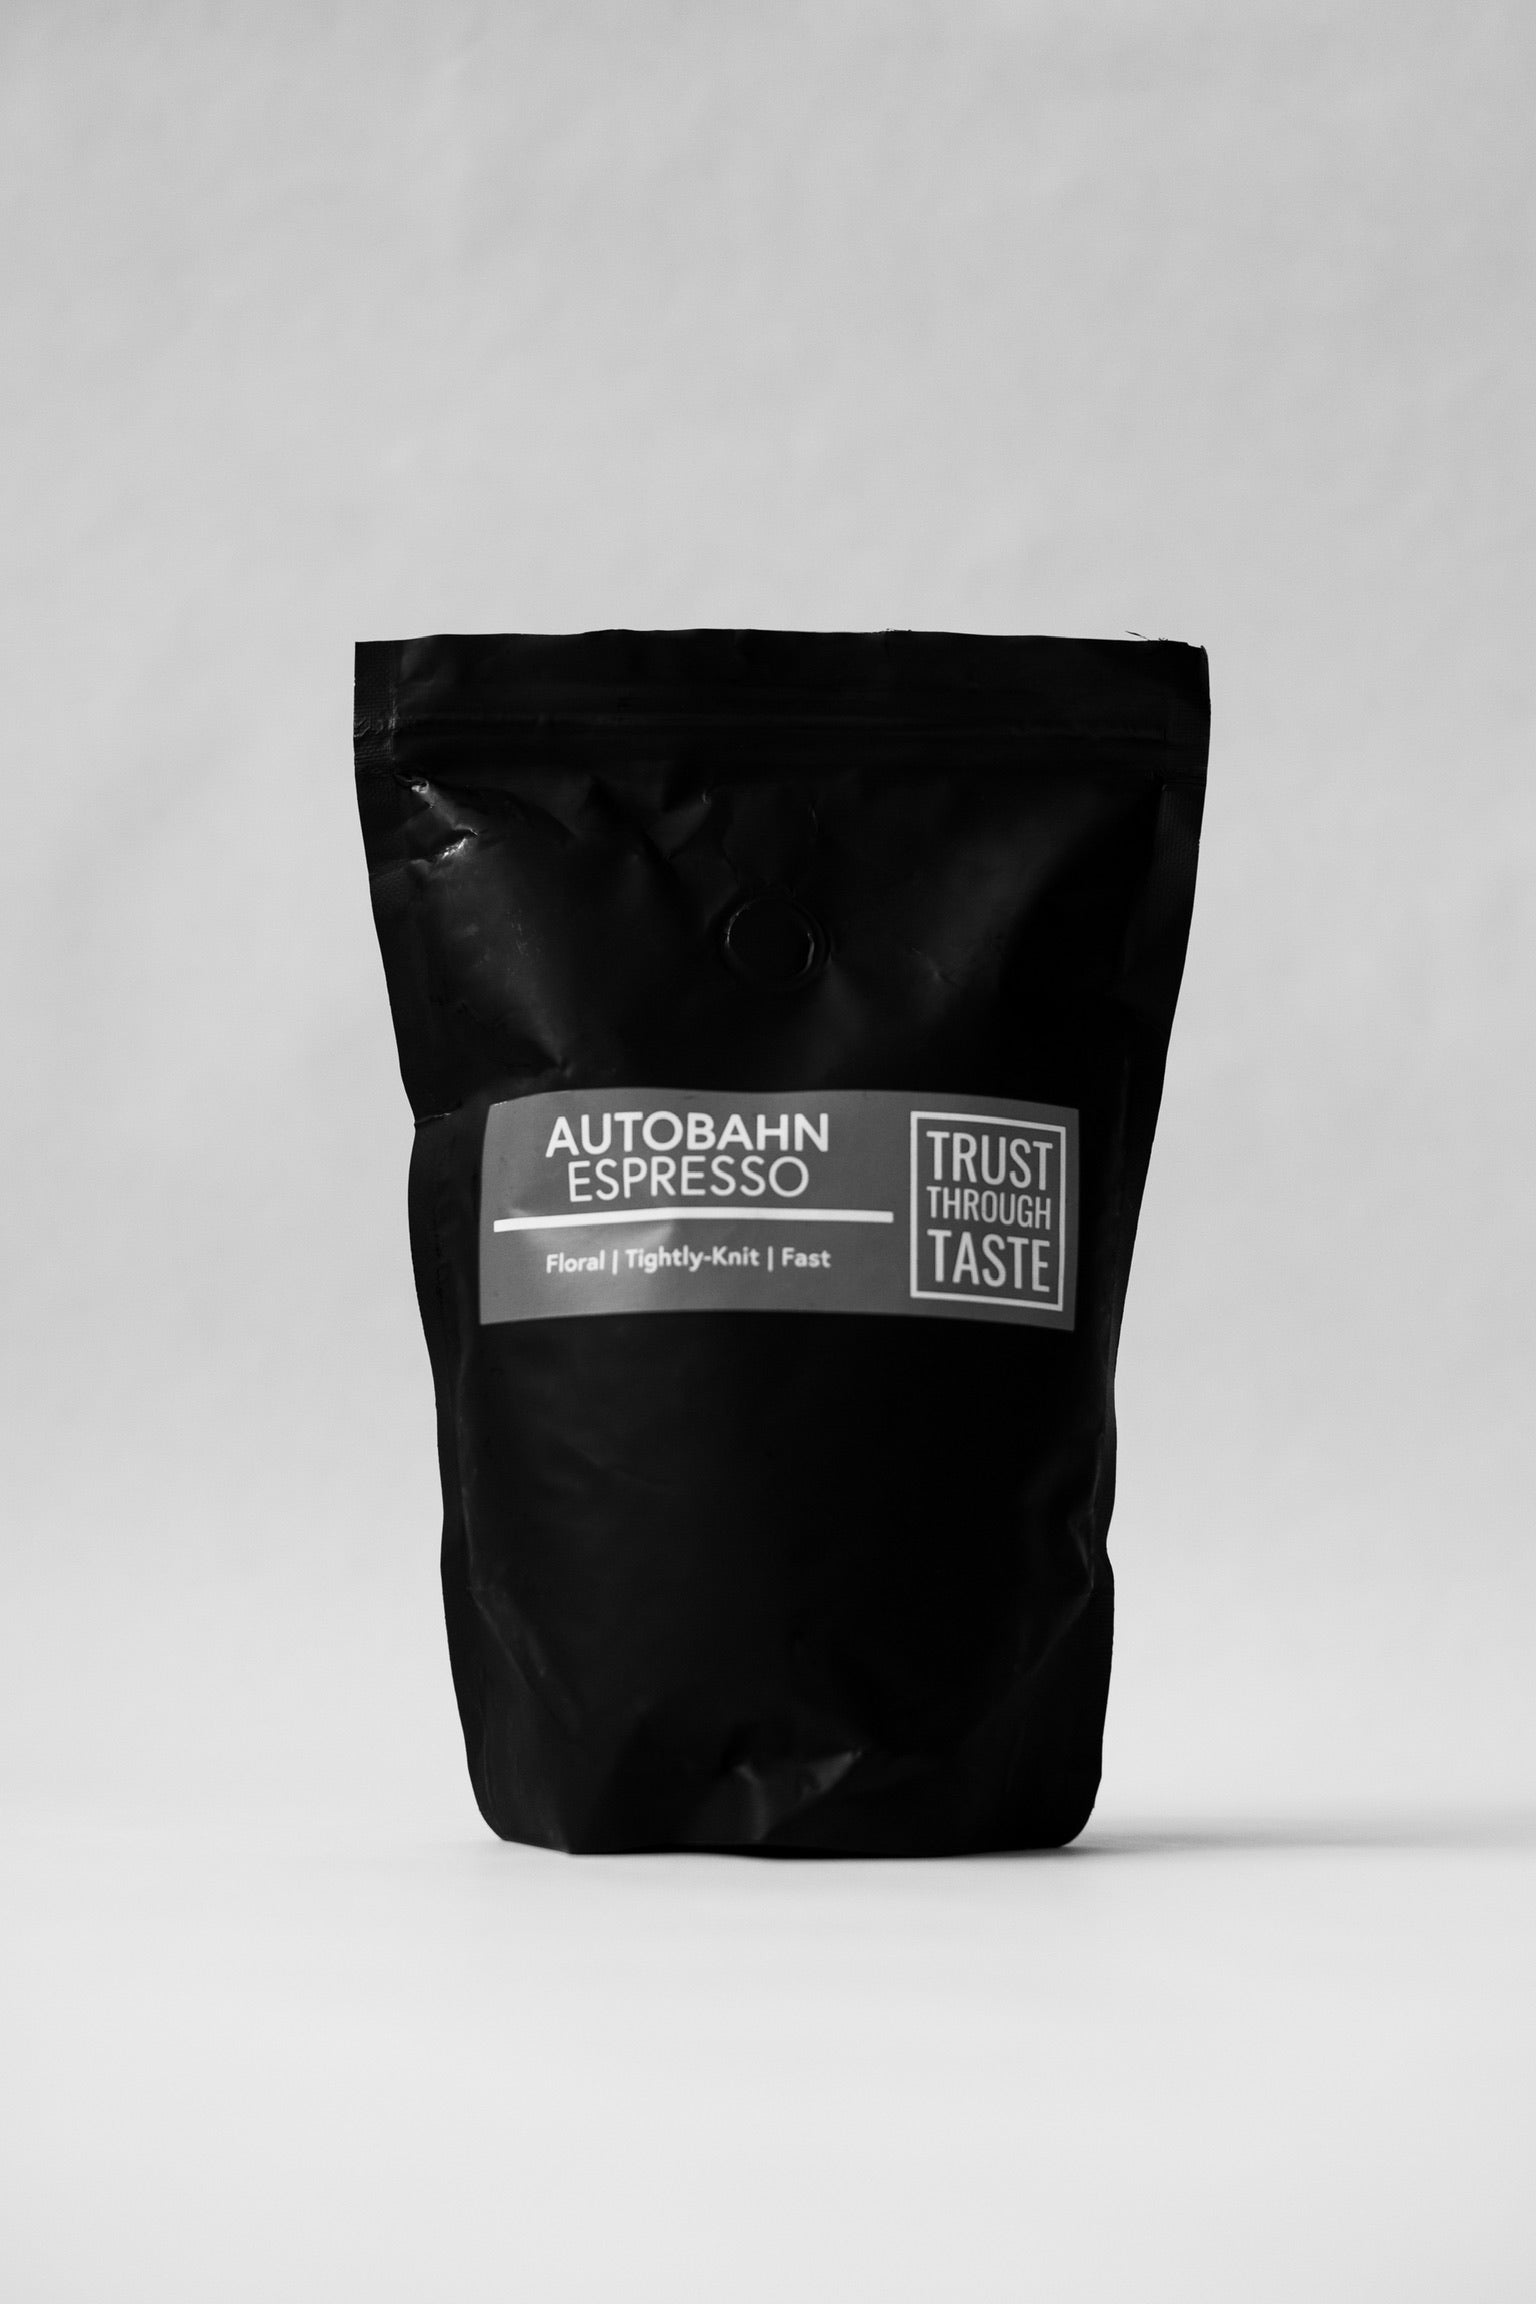 Autobahn Espresso